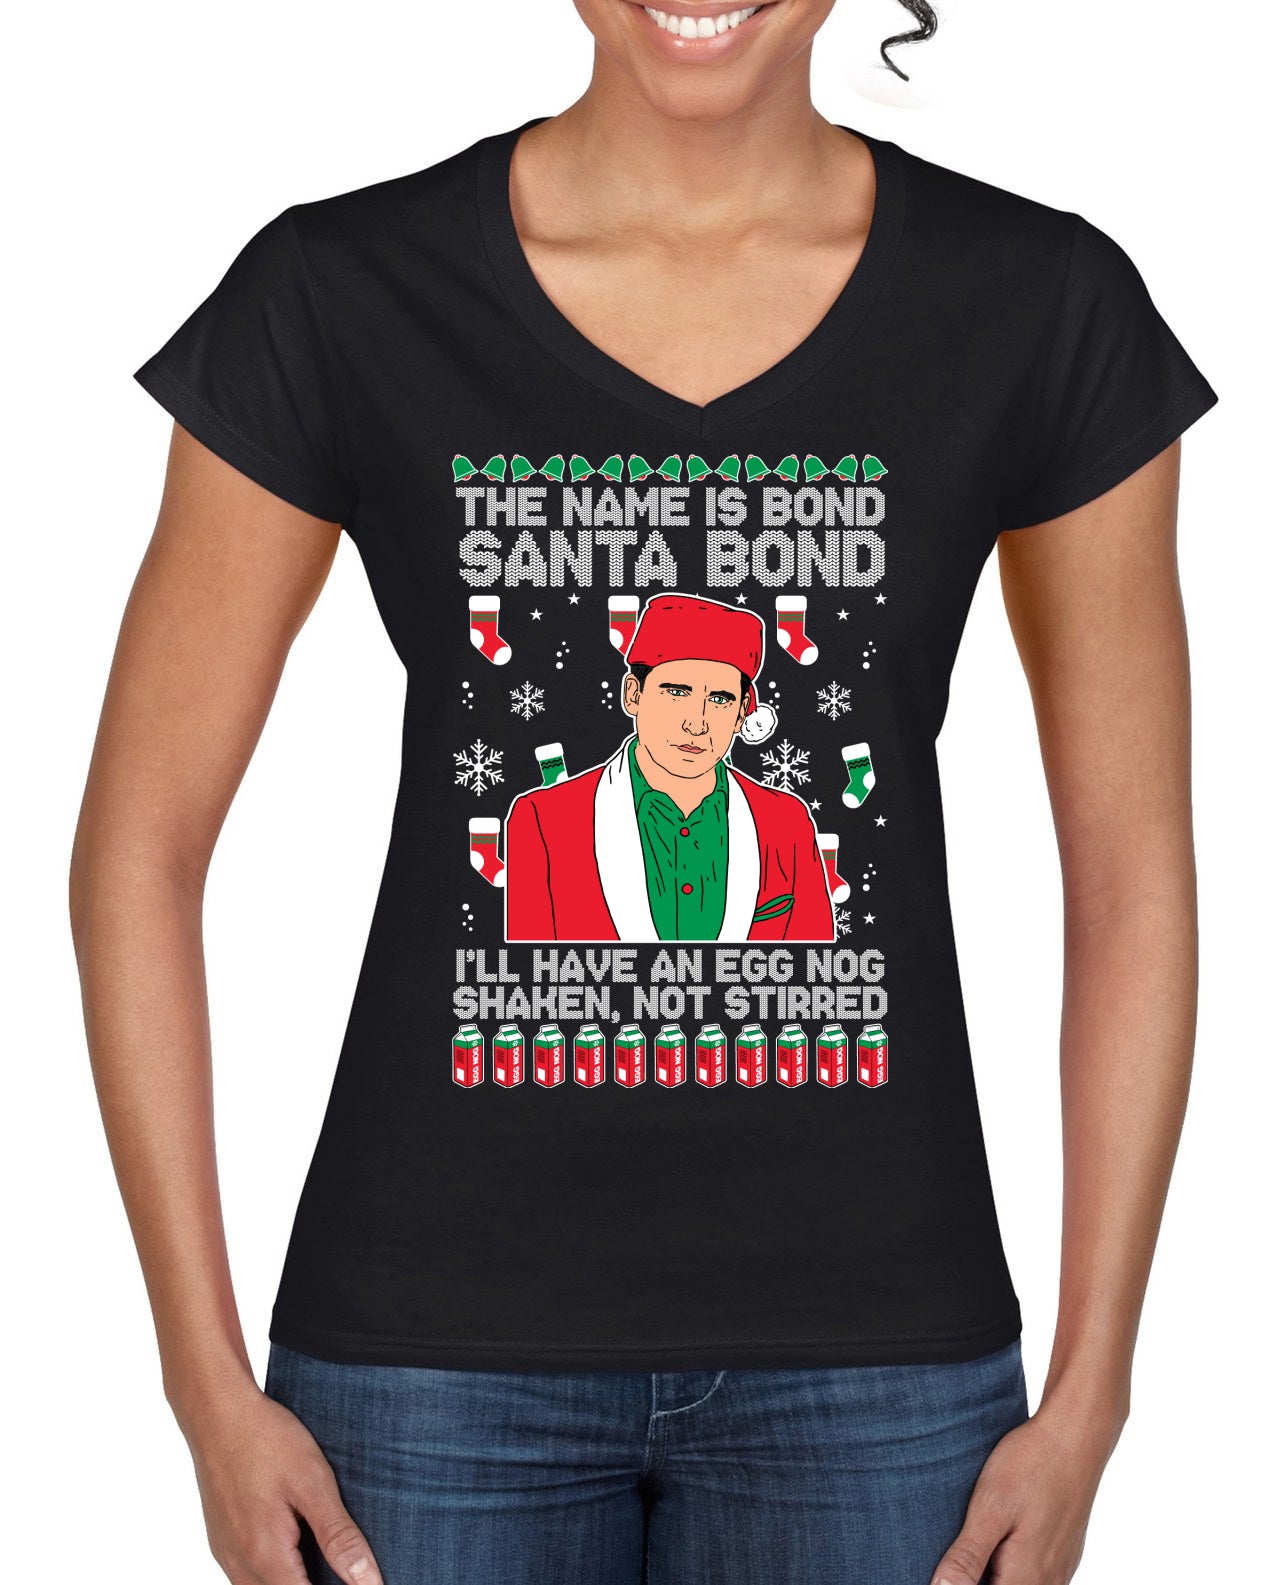 Michael Scott The Name is Bond Santa Bond Ugly Christmas Sweater Women’s Standard V-Neck Tee